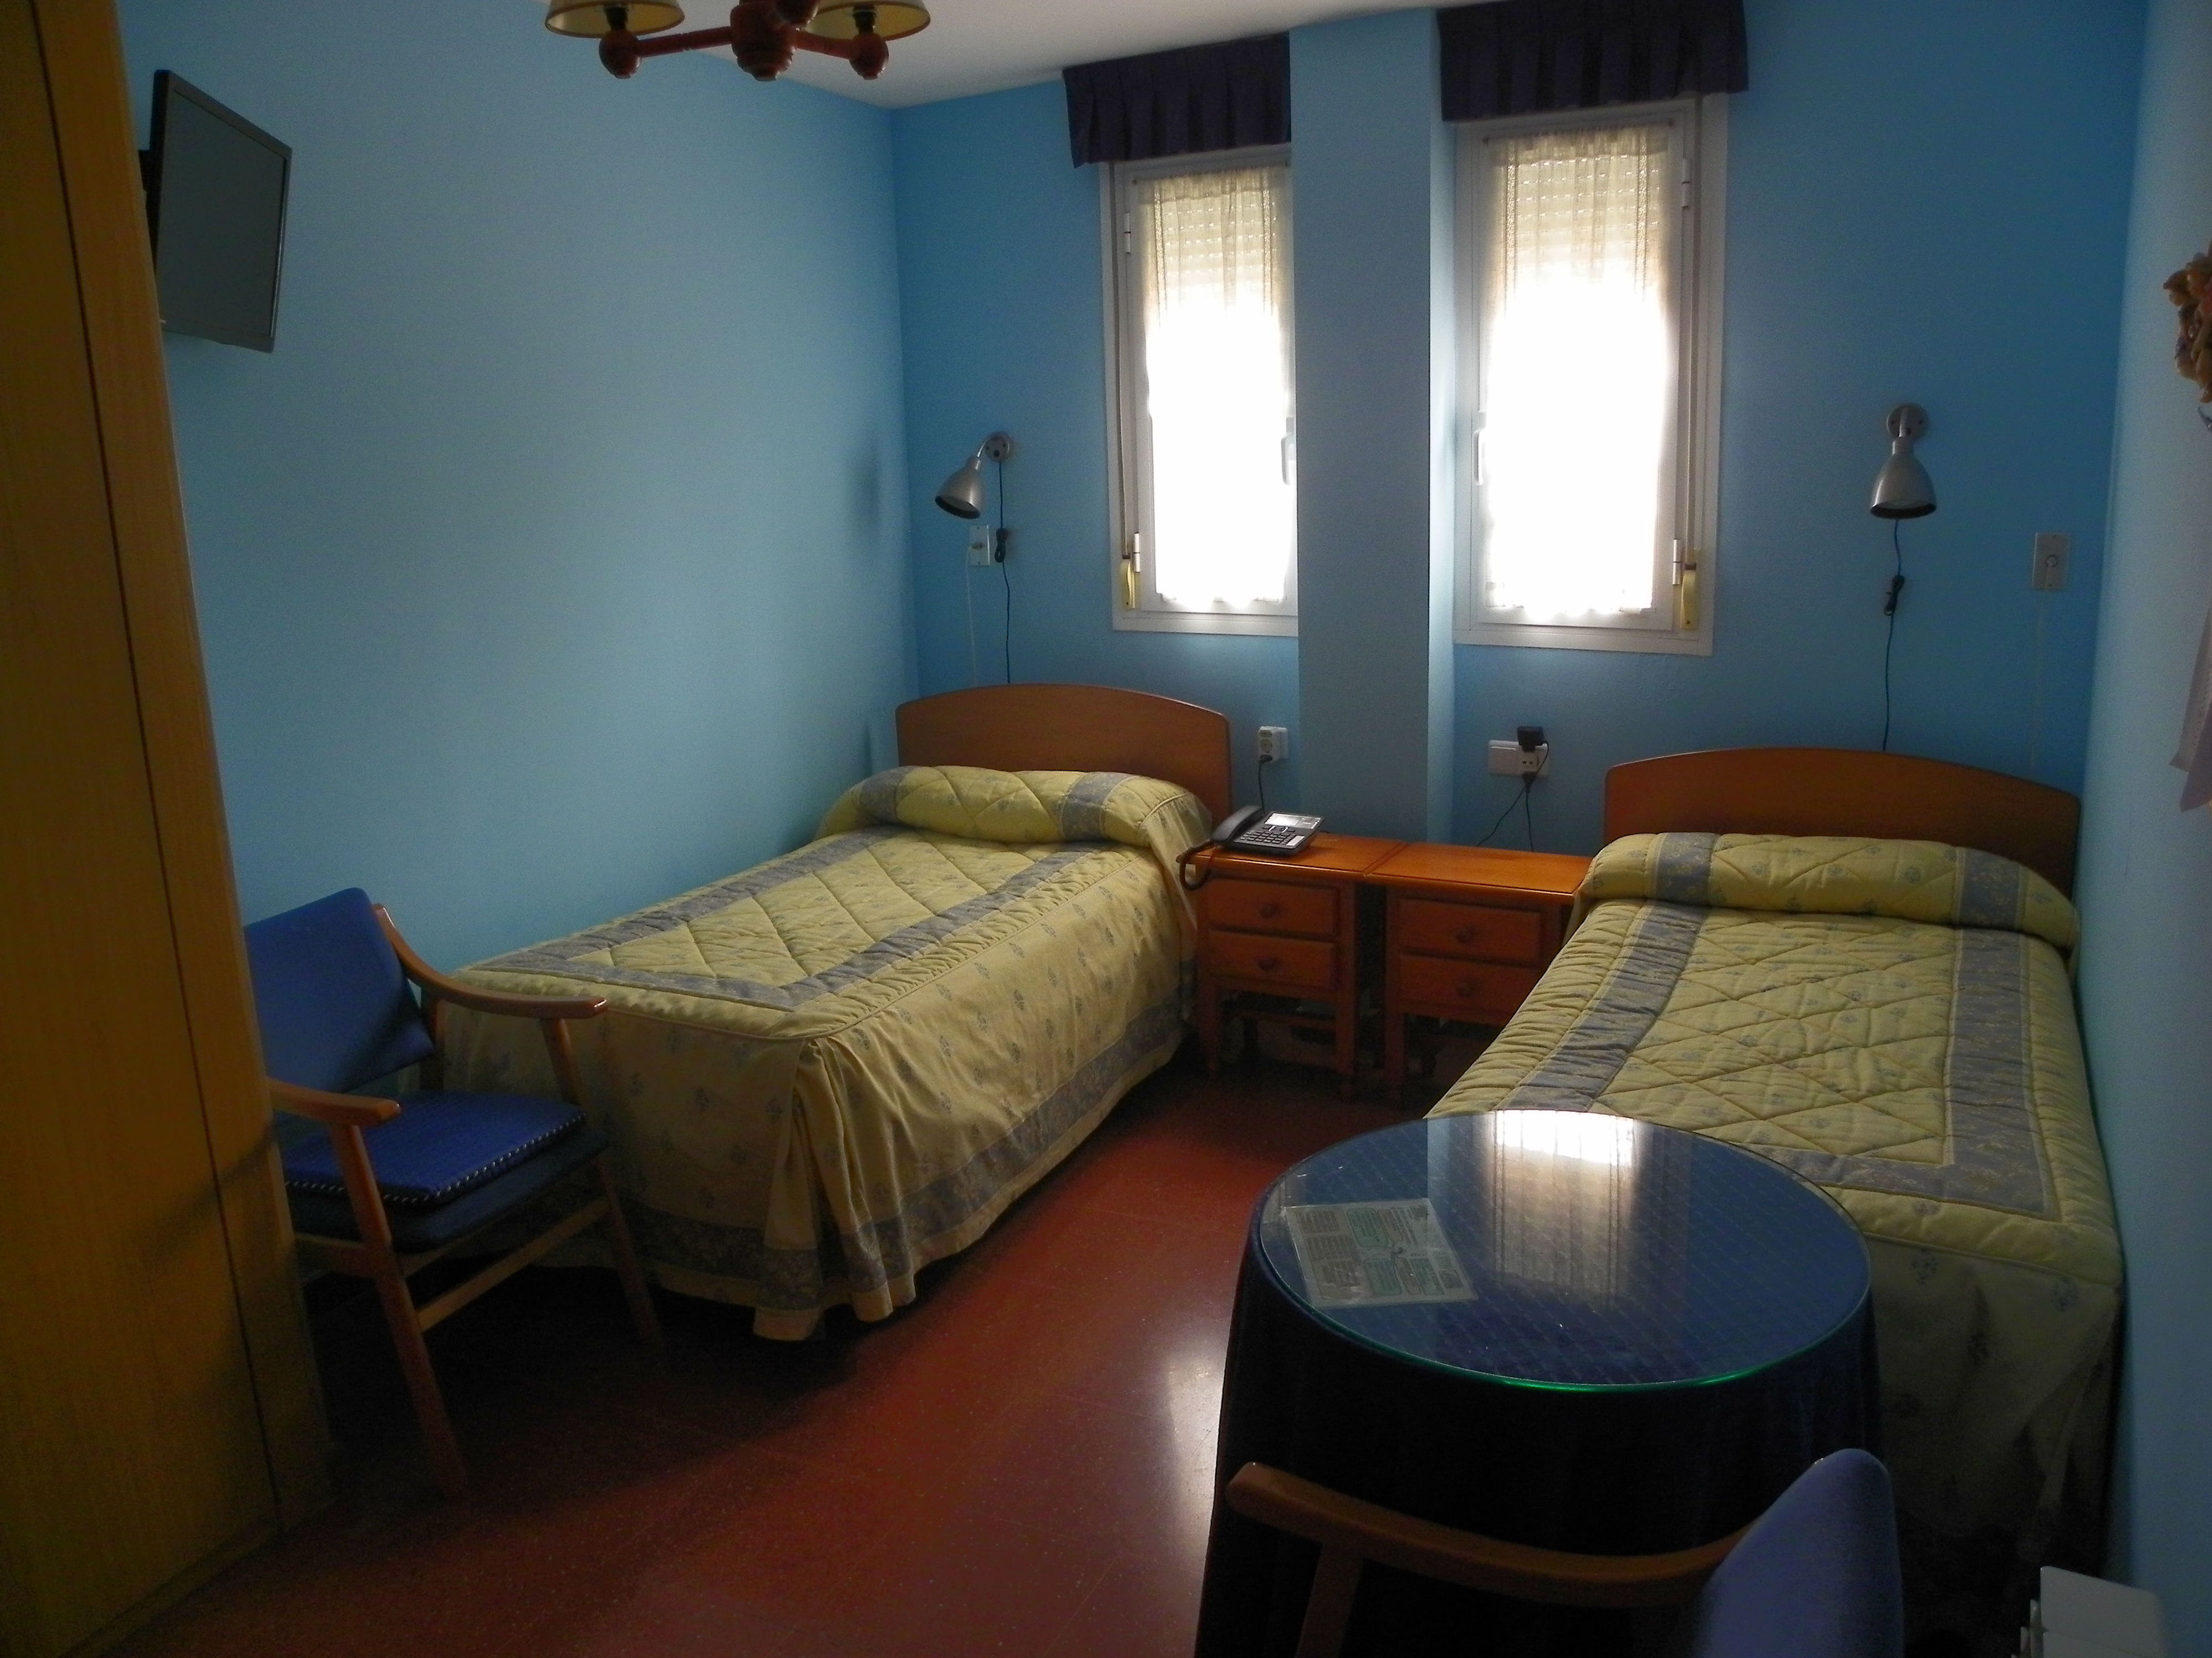 Foto 5 de Residencias geriátricas en Zaratán | Residencia para Personas Mayores Santa Ana